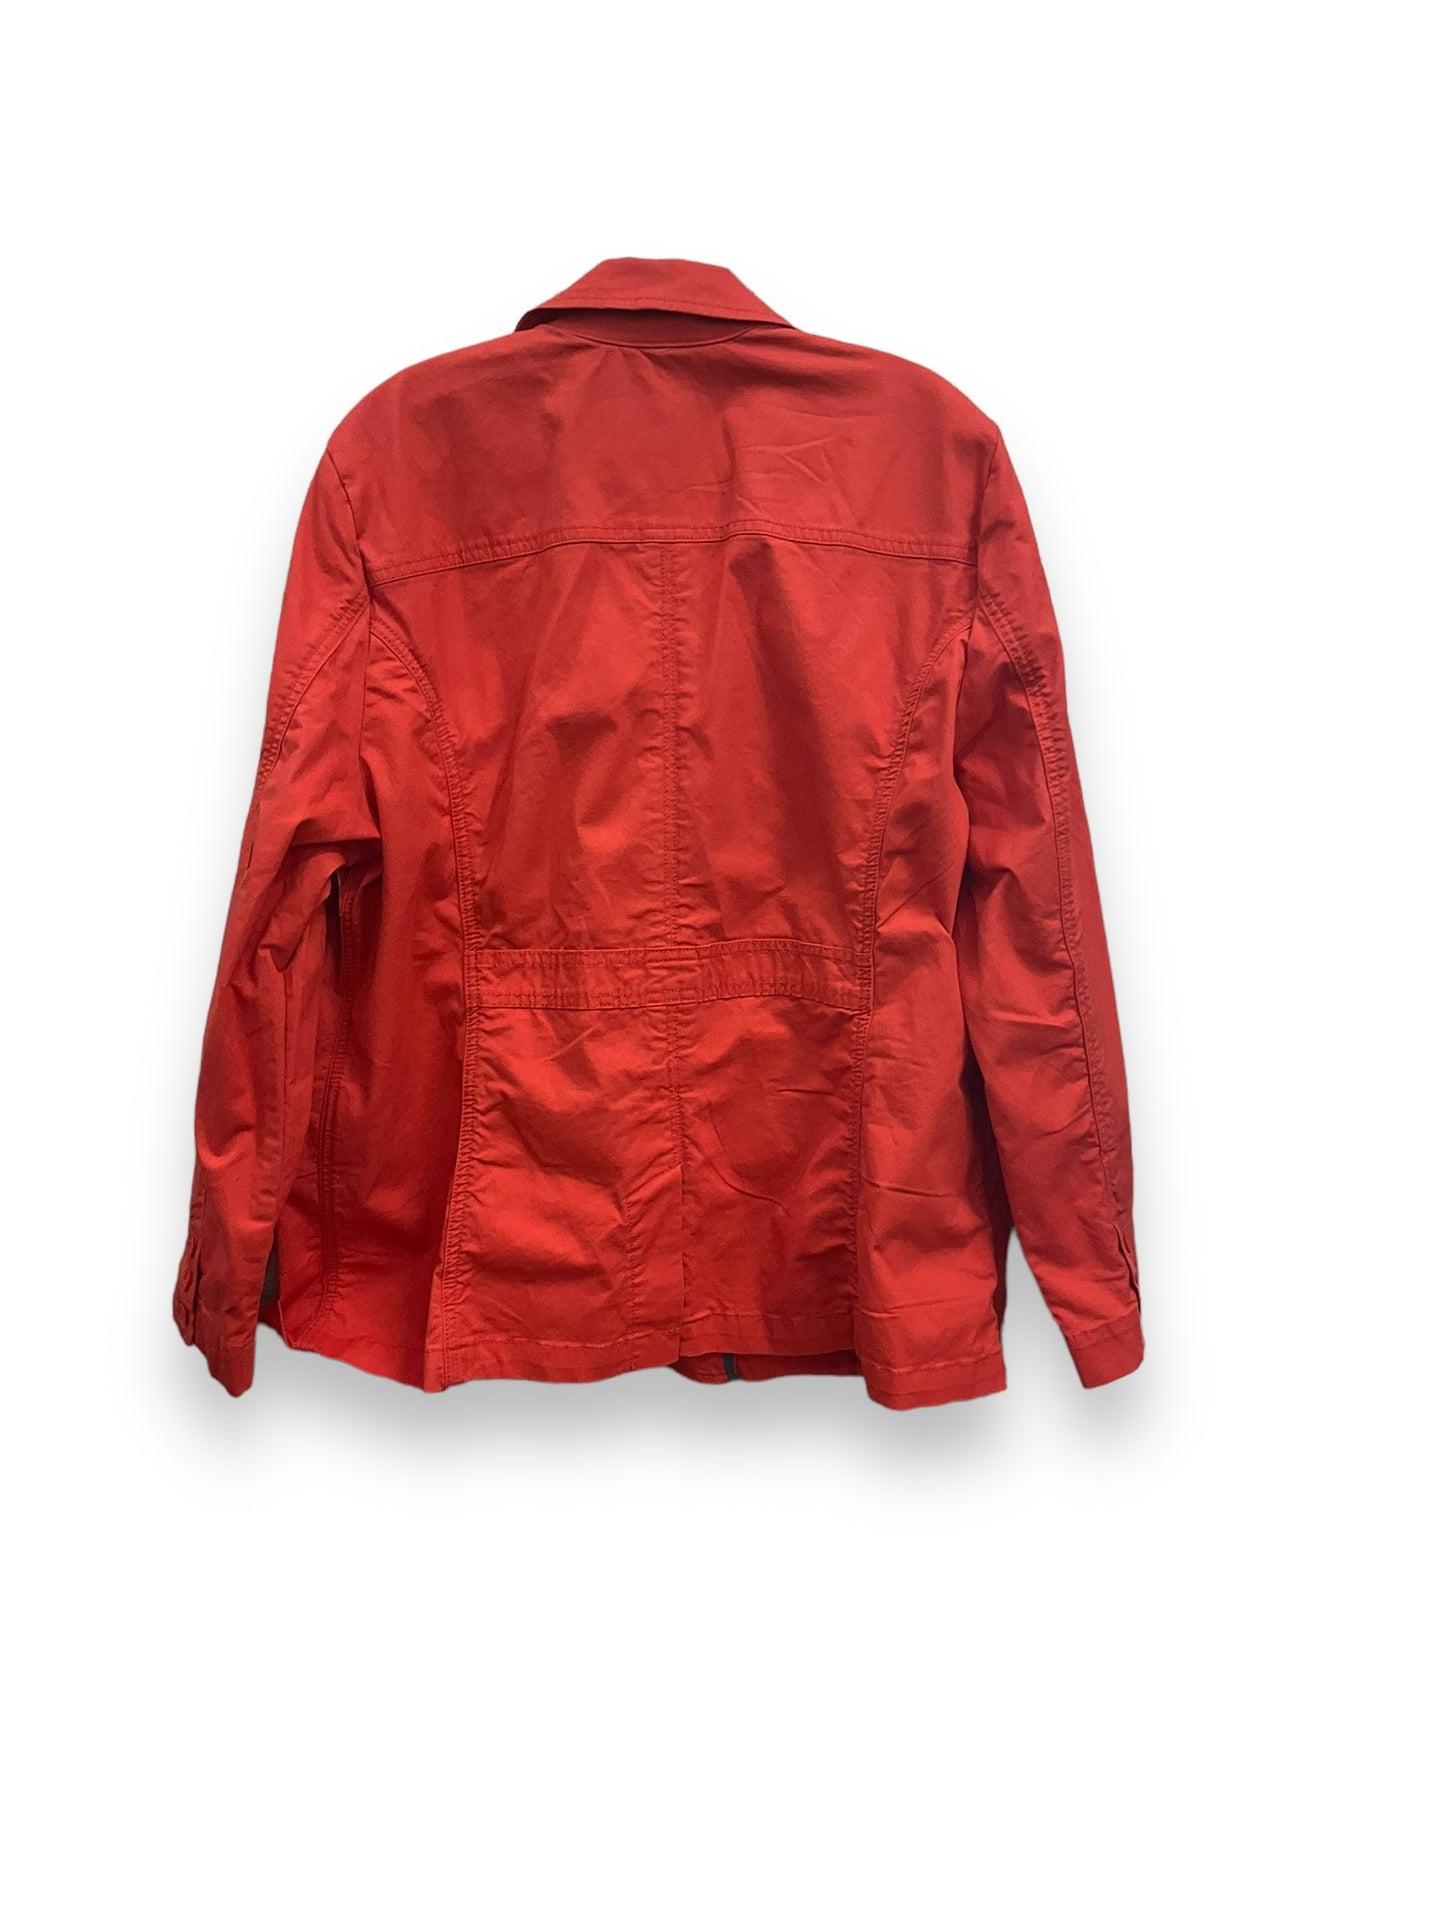 Jacket Other By Eddie Bauer  Size: 2x